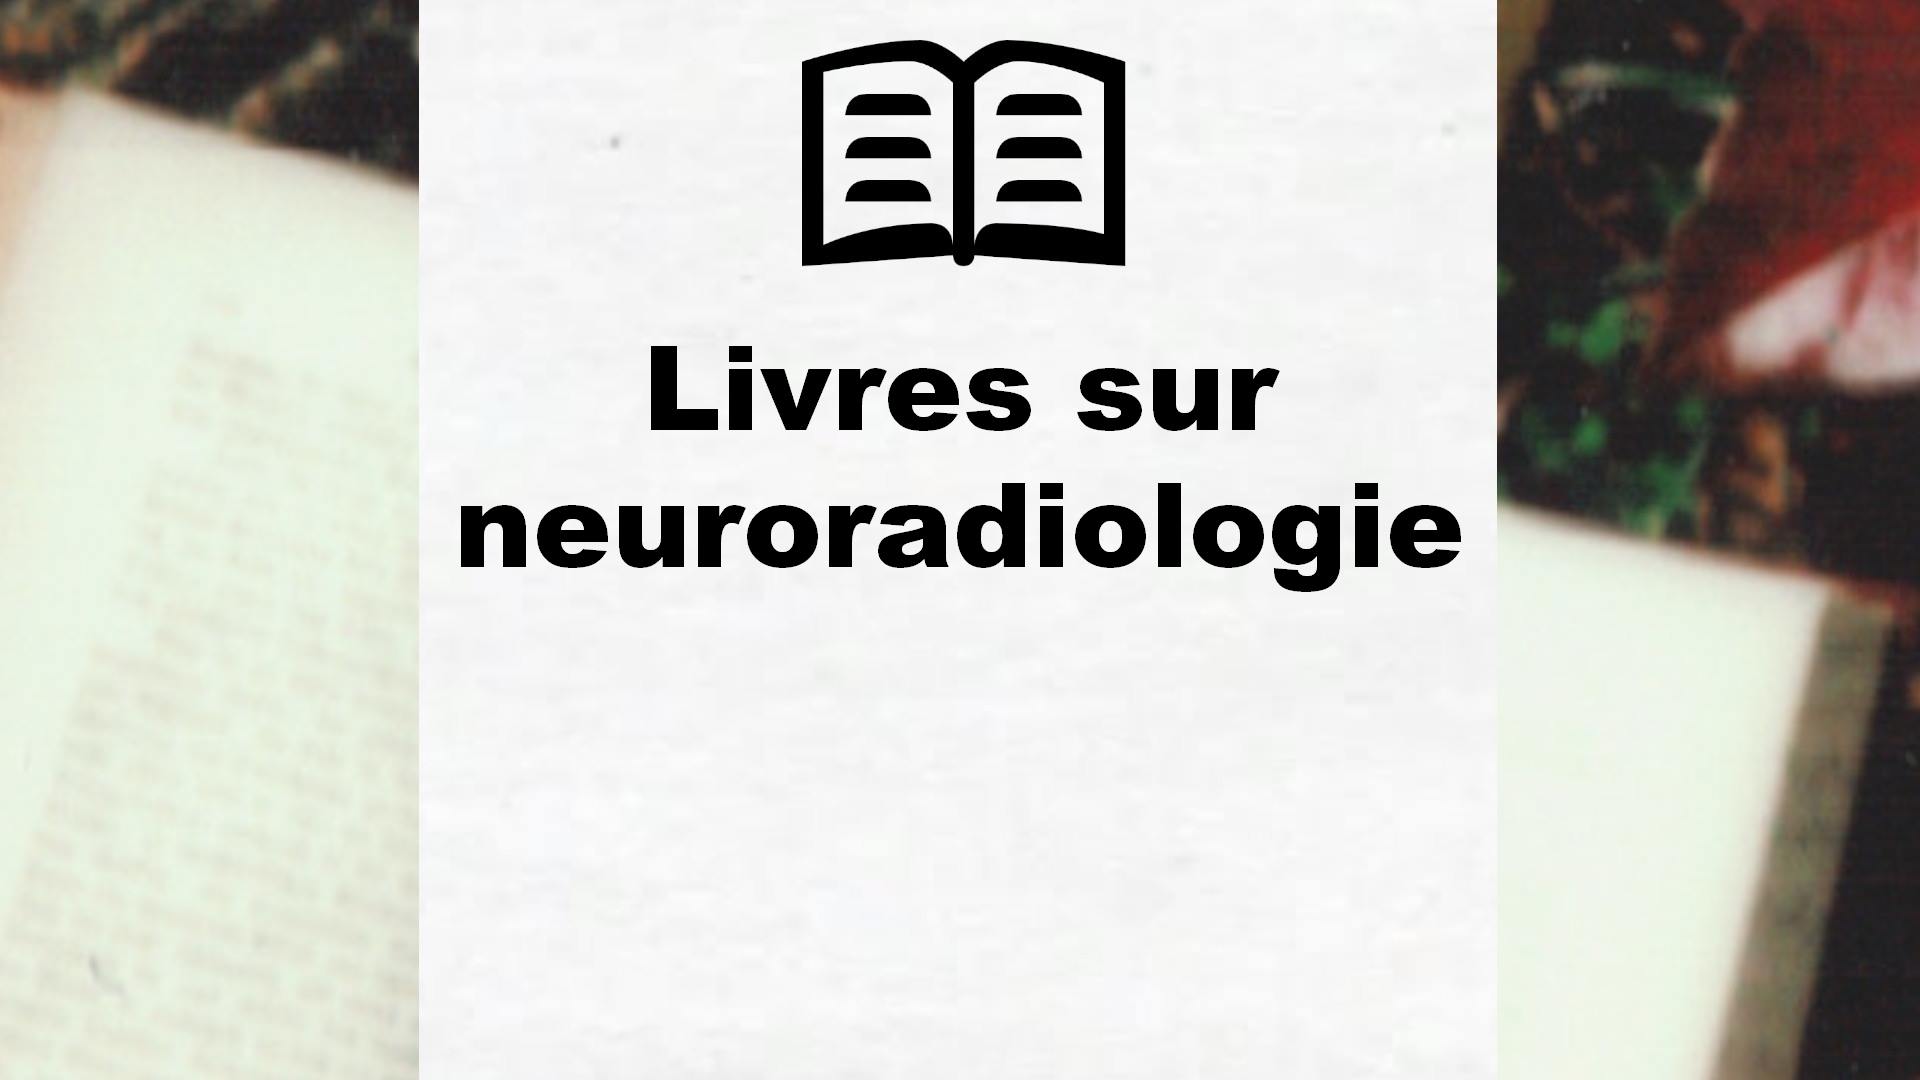 Livres sur neuroradiologie